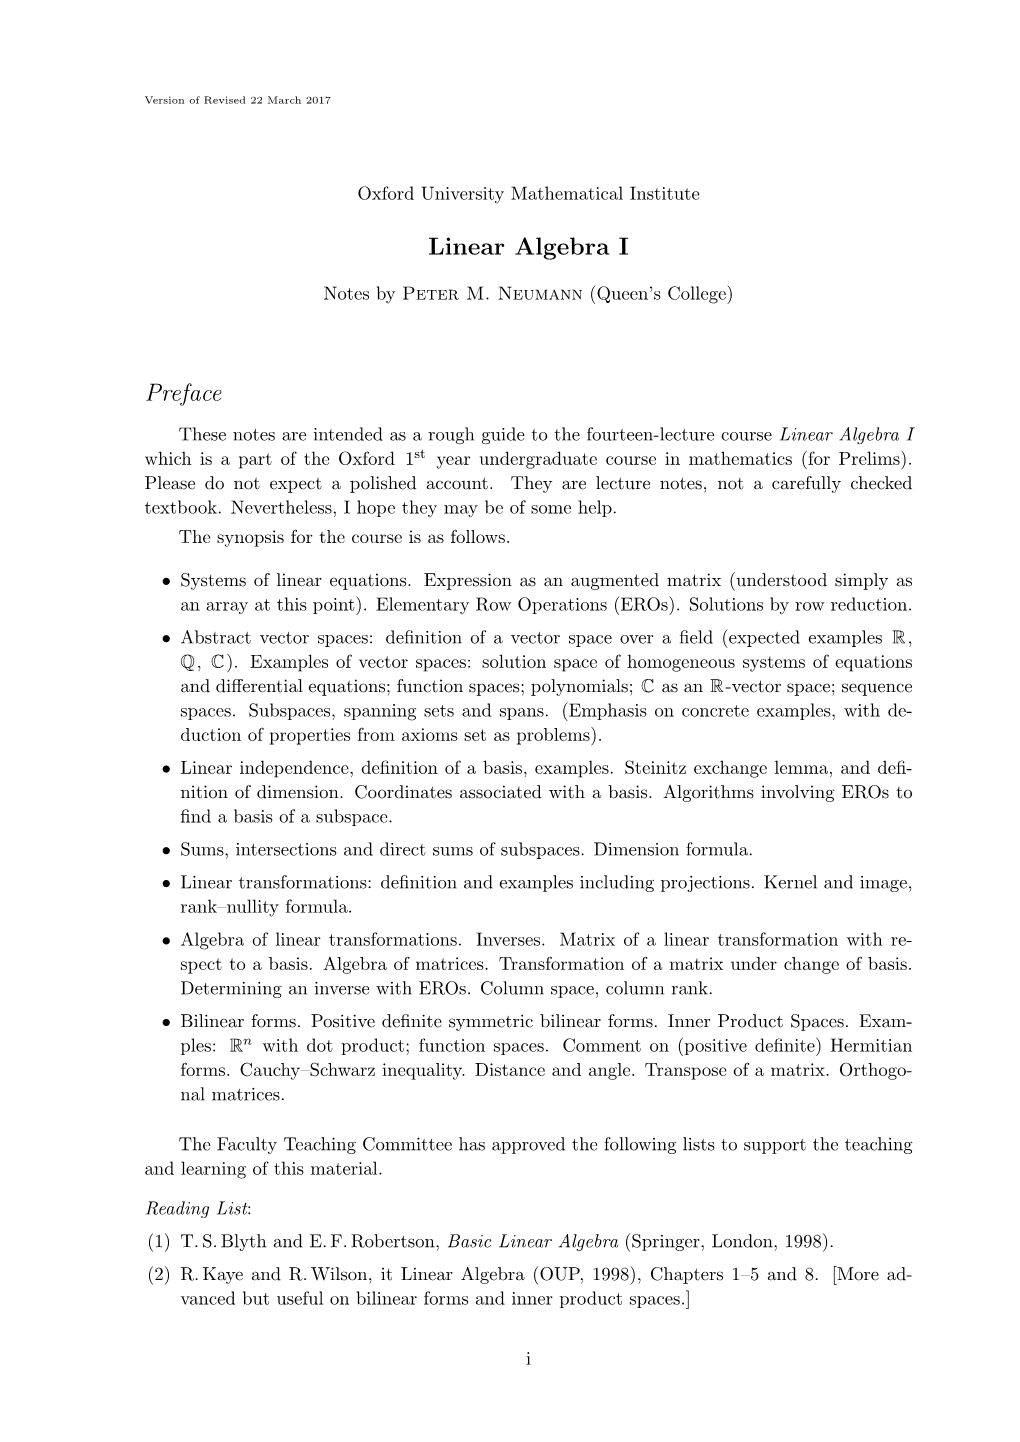 Linear Algebra I Preface